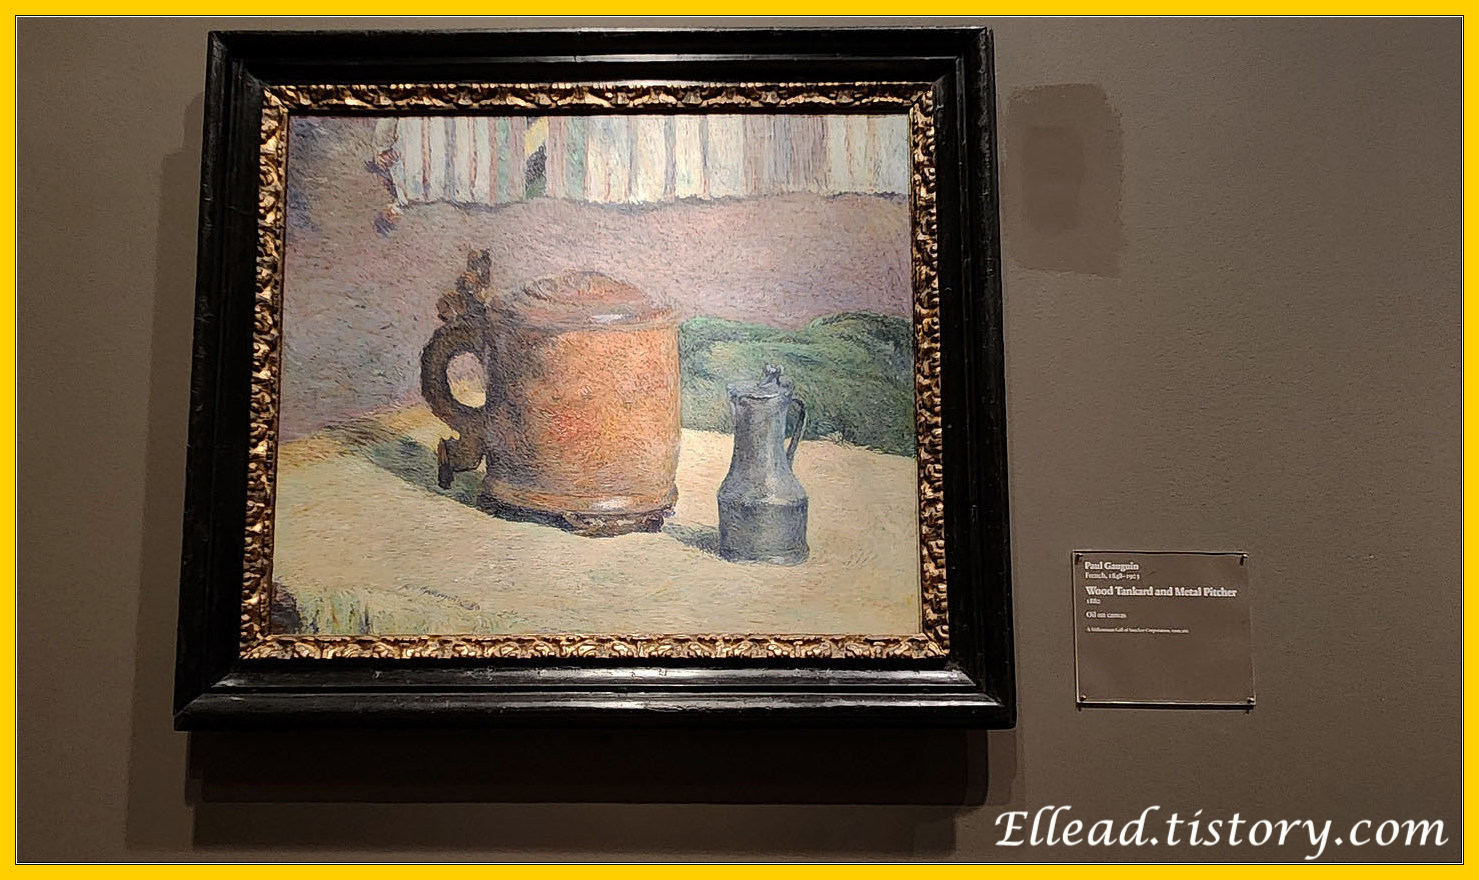 고갱&#44; Wood tankard and metal pitcher&#44; 1880